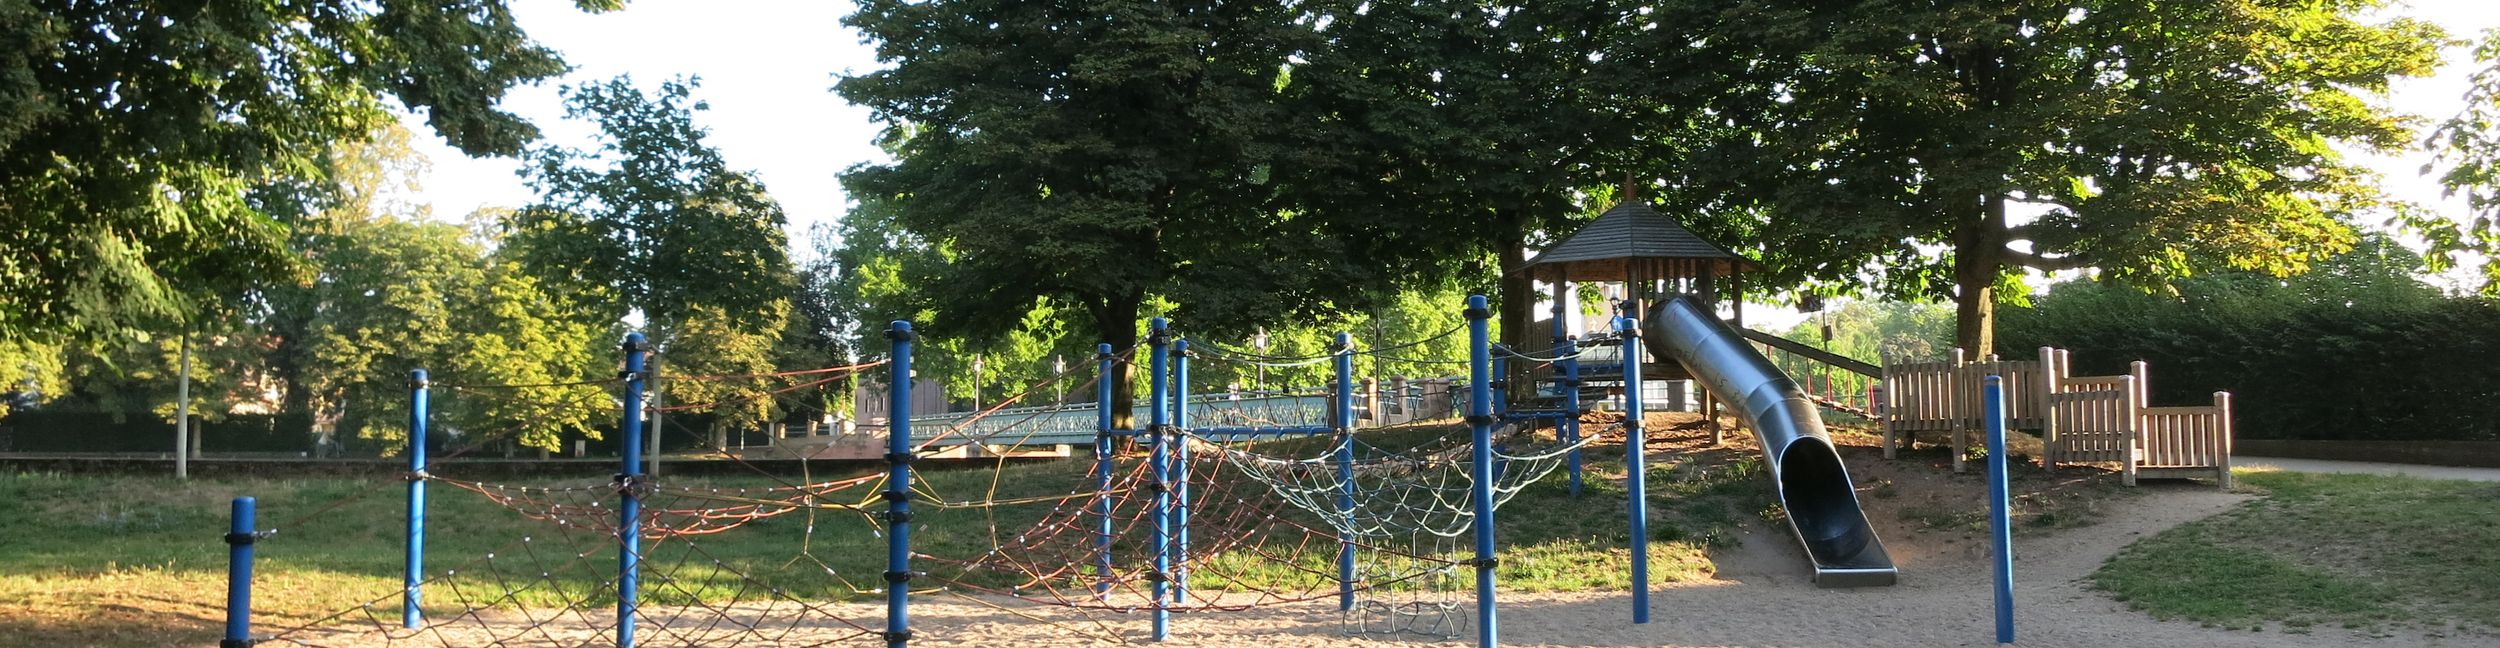 Schwanengarten playground in Rastatt